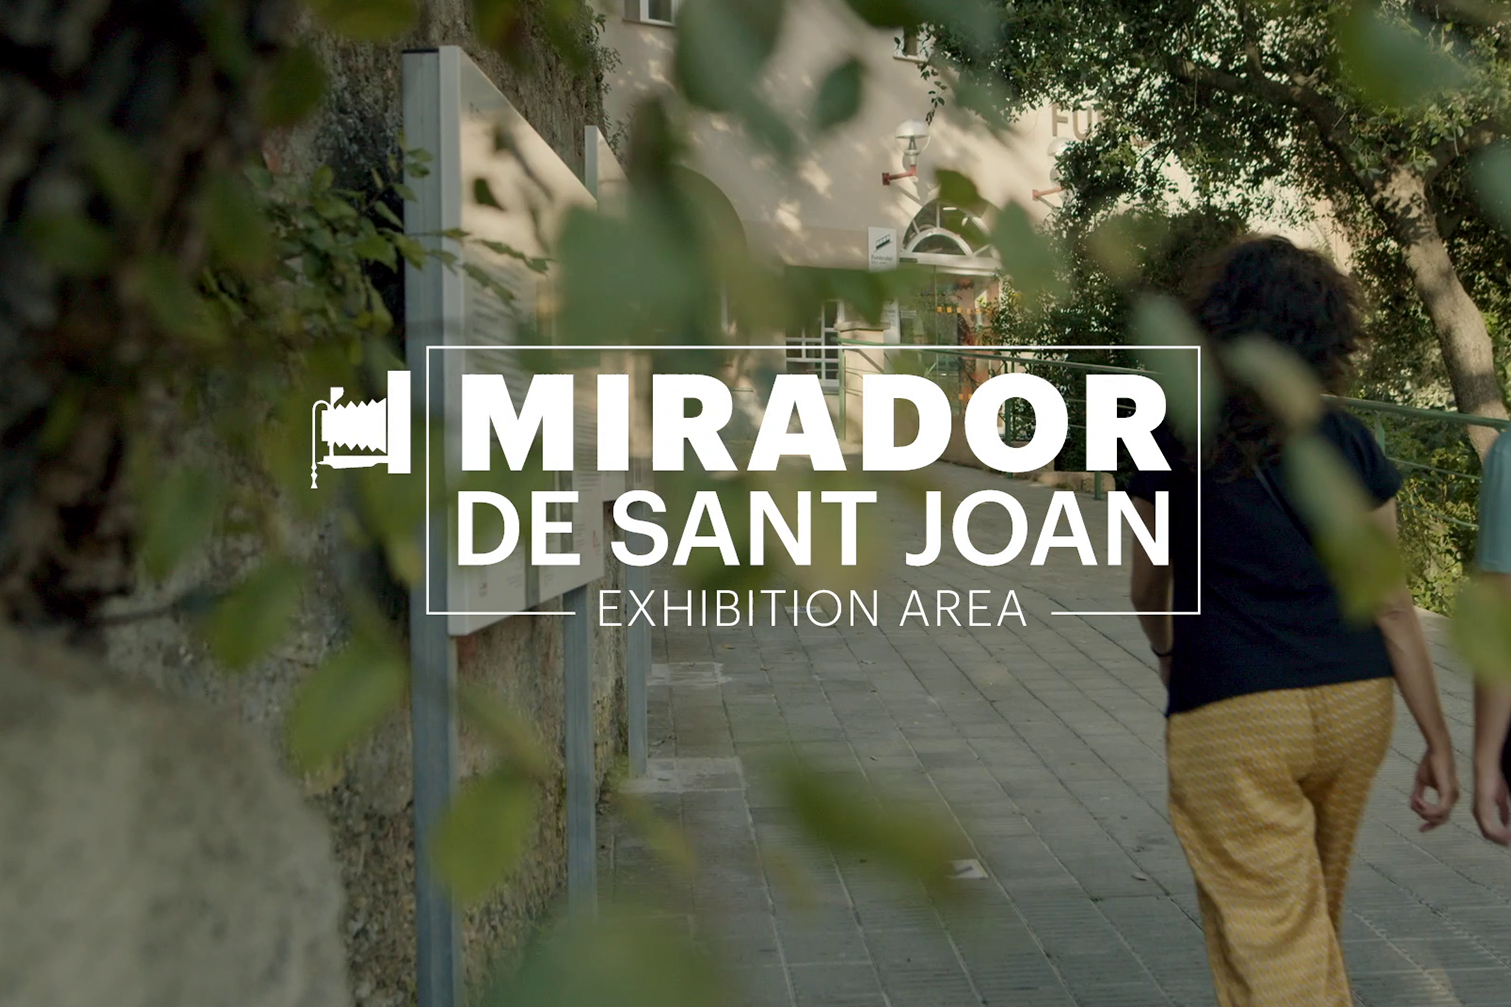 Mirador de Sant Joan - Exhibition Area 1